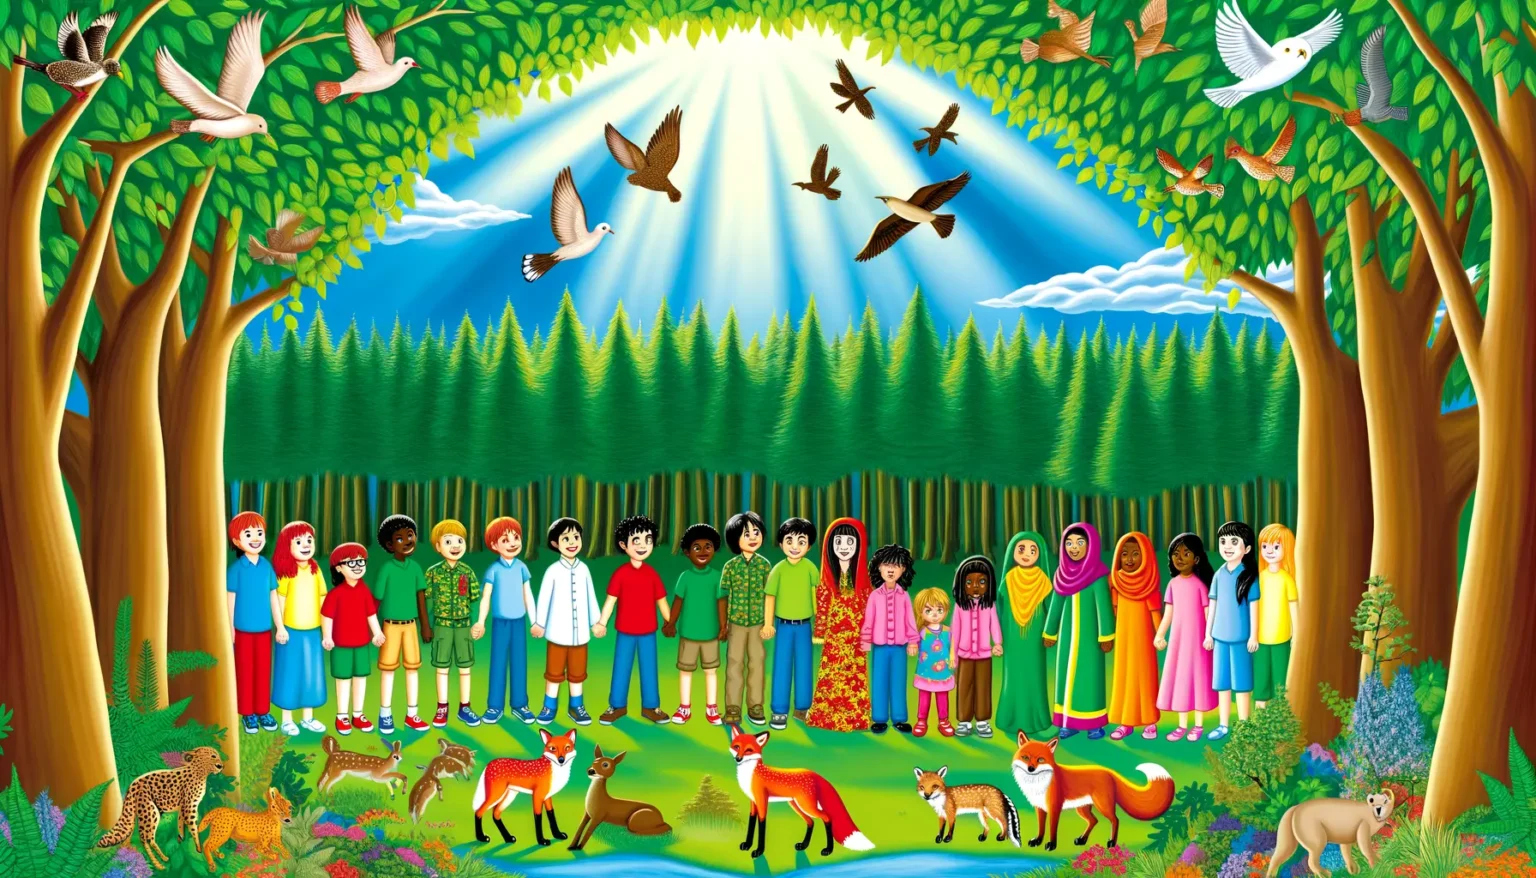 Eine bunte Illustration zeigt Kinder und Tiere in einer friedlichen, üppig grünen Landschaft. Mehrere Kinder unterschiedlicher Ethnien stehen in einer Linie, gekleidet in vielfältige traditionelle und moderne Kleidung, mit lachenden Gesichtern. Um sie herum befinden sich verschiedene Wildtiere, wie Füchse, ein Gepard und Rehe, in einem harmonischen Zusammenspiel. Über ihnen erstreckt sich ein blauer Himmel mit leuchtenden Sonnenstrahlen, die durch die Baumwipfel scheinen, und mehreren fliegenden Vögeln, die Freiheit und Naturverbundenheit symbolisieren.